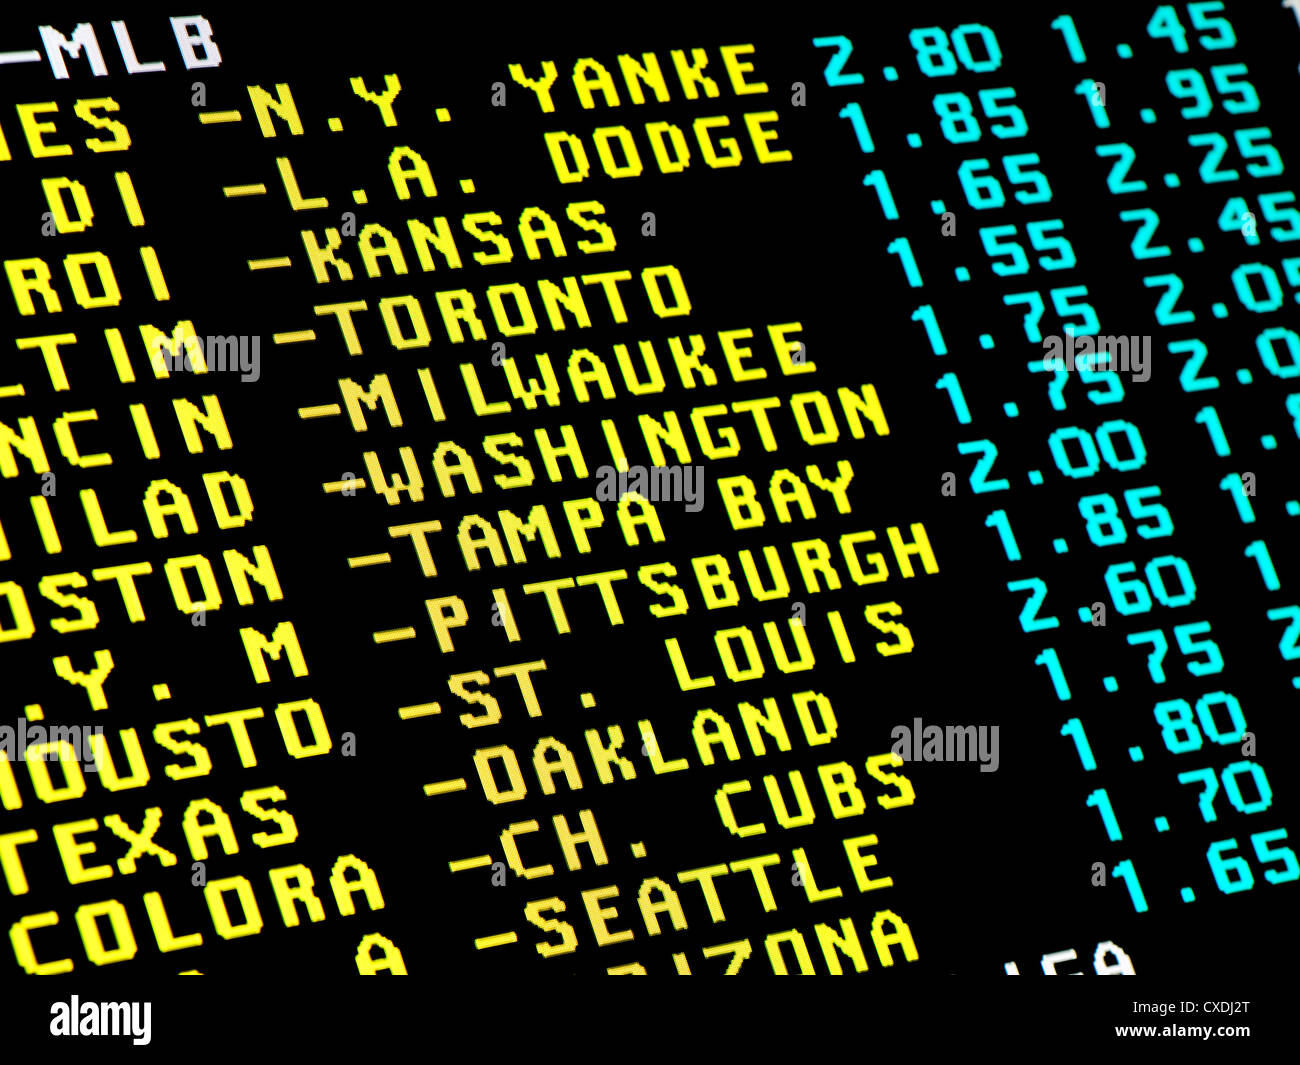 Blick auf dem Monitor mit Videotext und Wettangebot von Baseball Matchups. Stockfoto